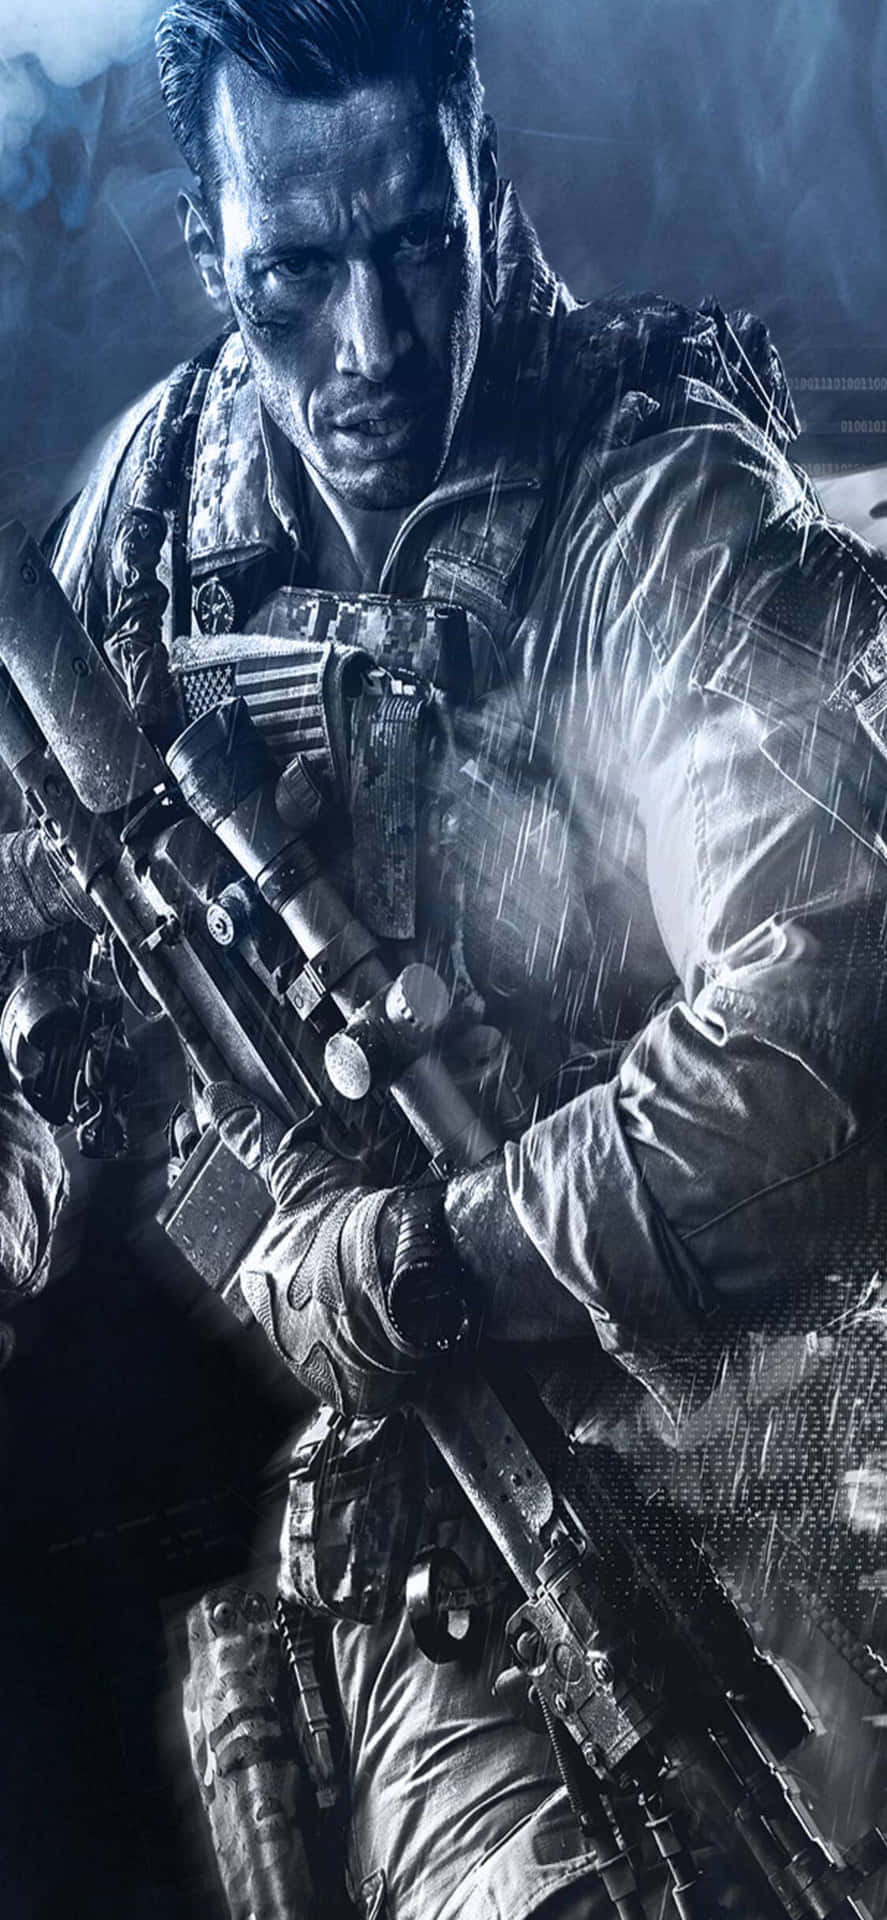 Spännandestrider Väntar På Den Nya Iphone X Med Battlefield 4 Som Bakgrundsbild.